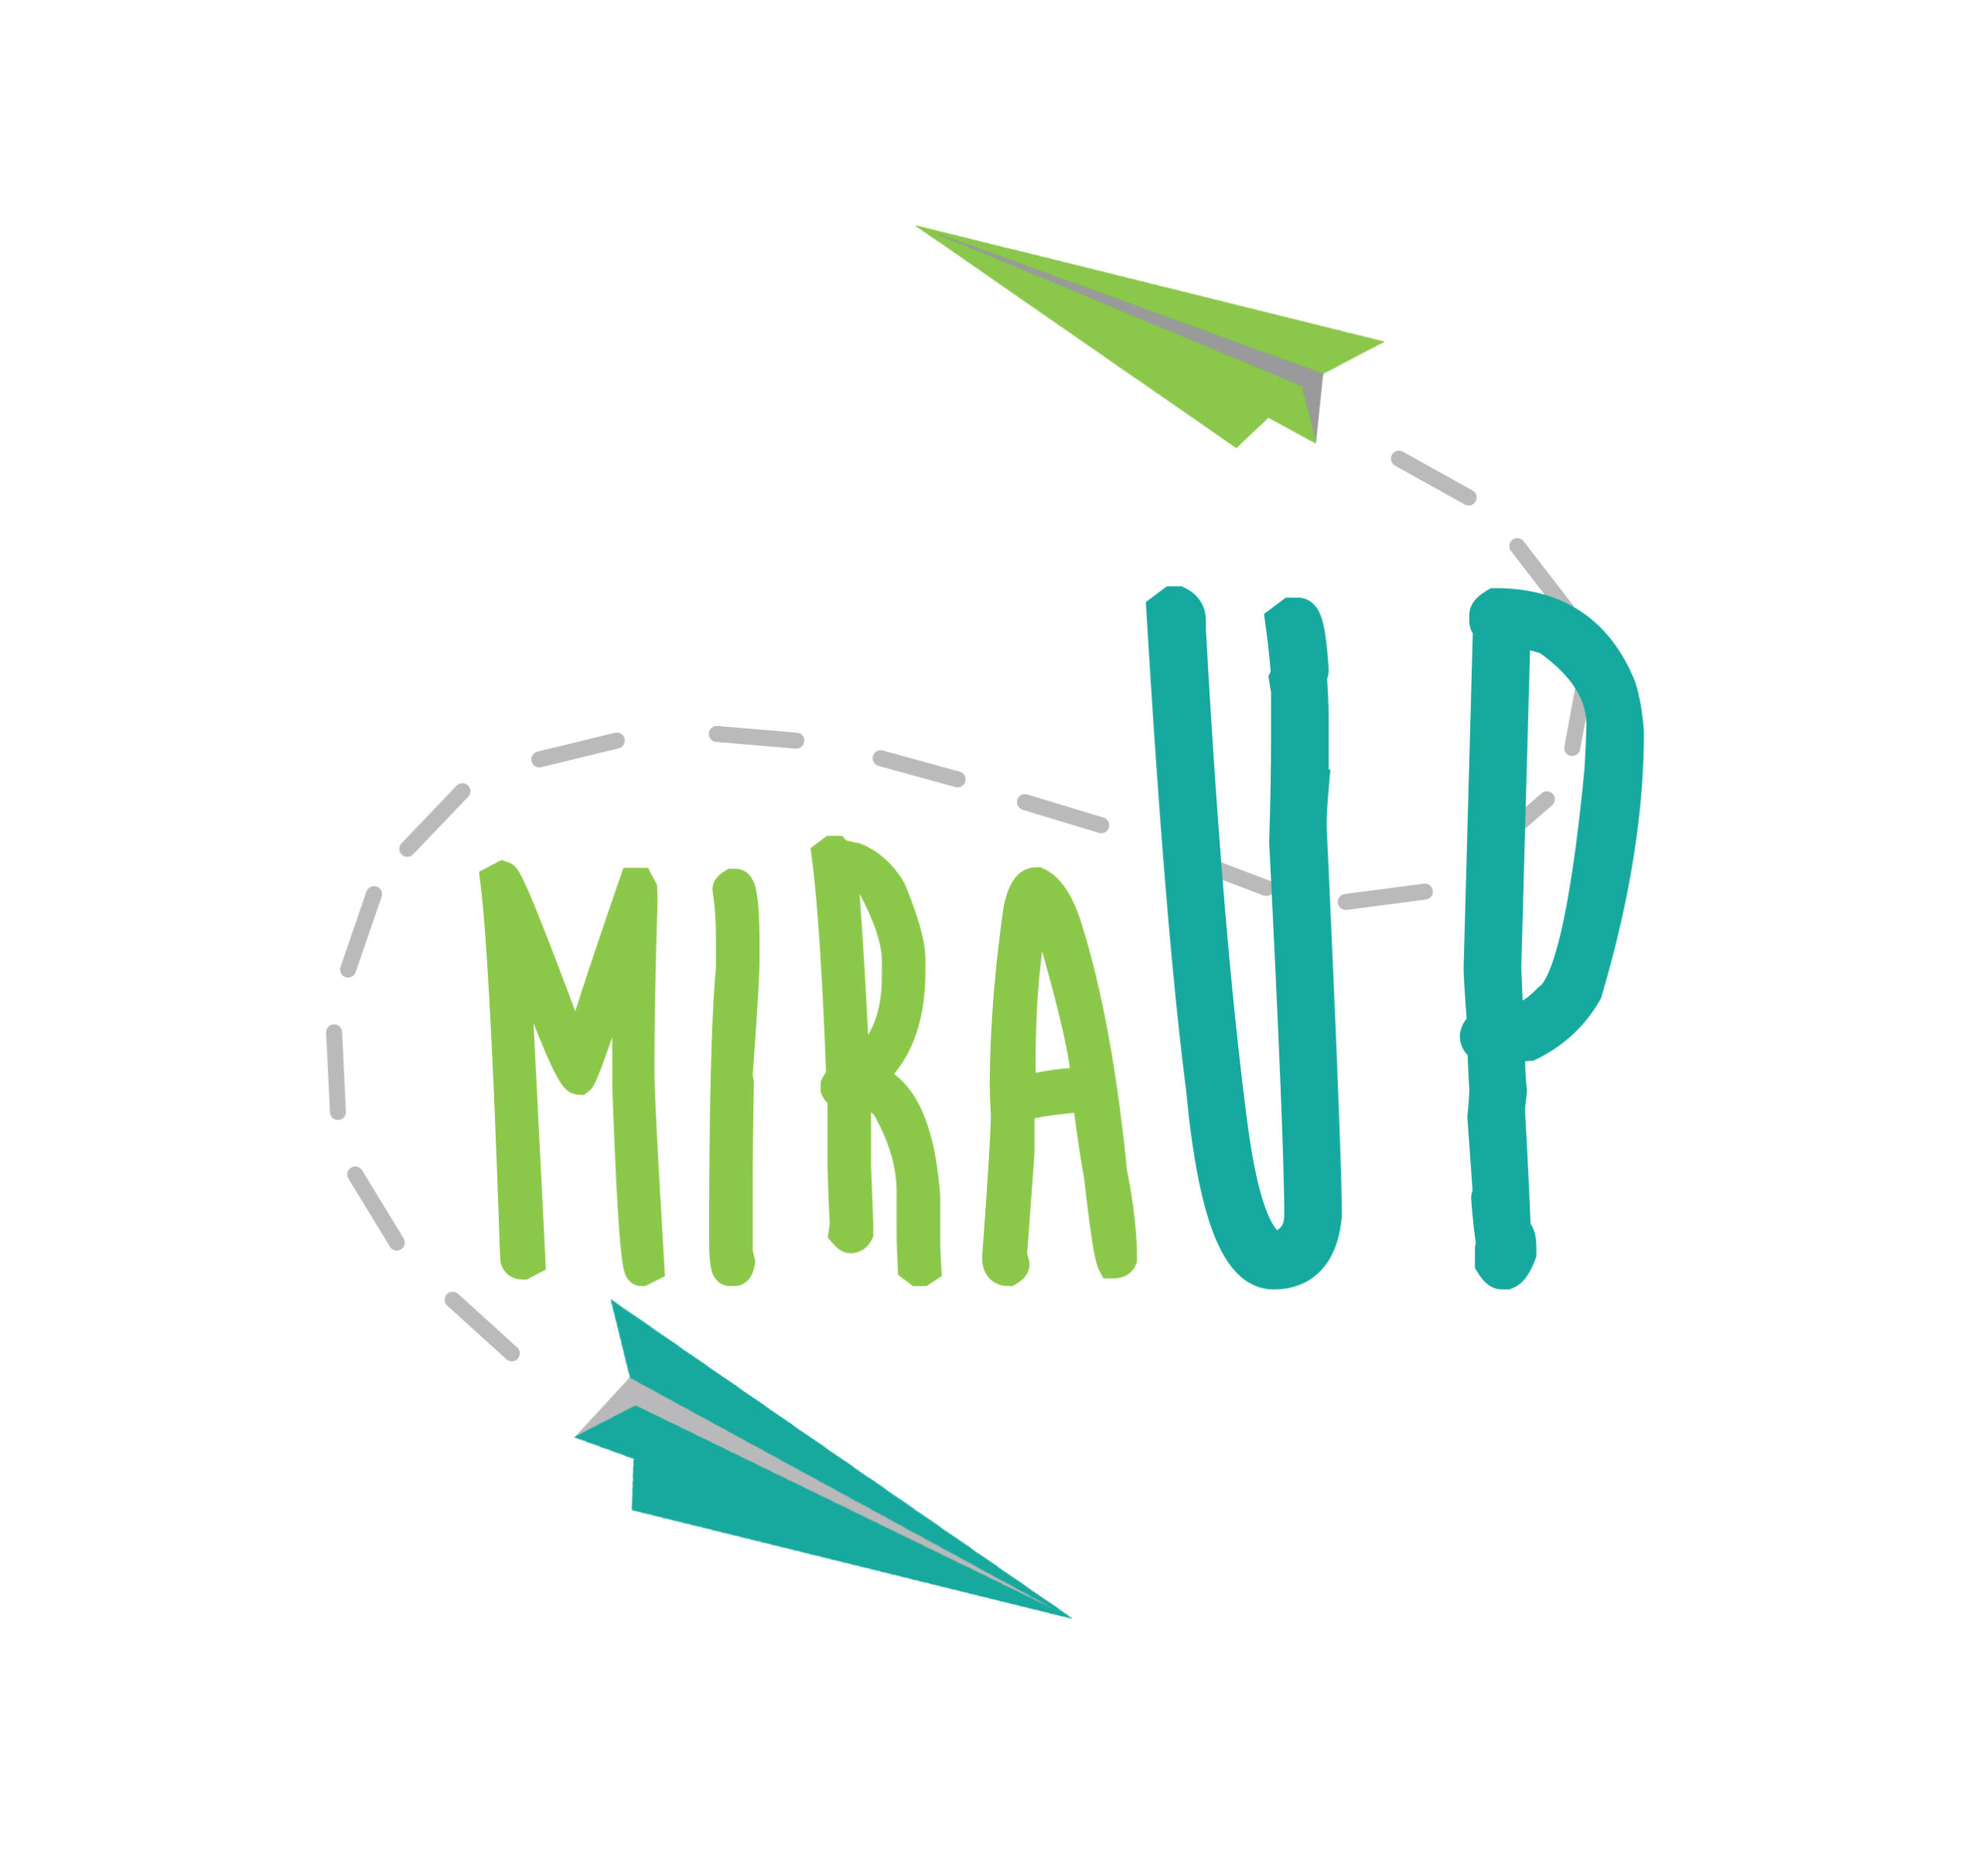 rogetto Mira Up, co-progettazione promossa dalla Fondazione Comunità di Mirafiori, volta alla riqualificazione del quartiere Mirafiori Sud di Torino attraverso l’arte, la bellezza e l’espressività.